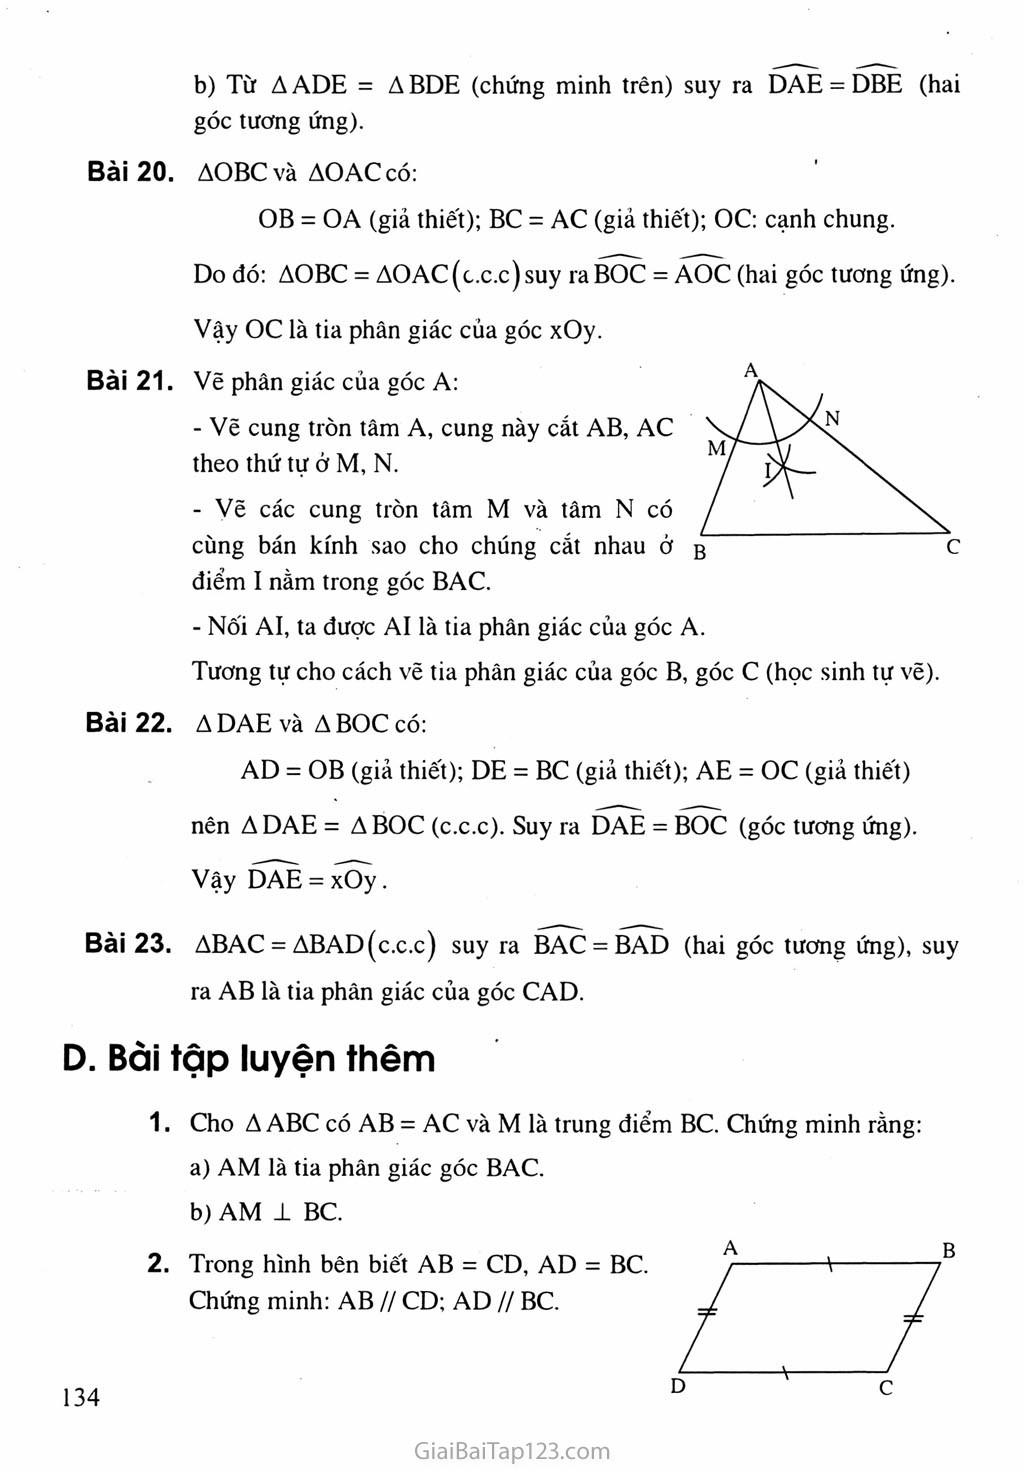 Bài 3. Trường hợp bằng nhau thứ nhất của tam giác: cạnh - cạnh - cạnh (c.c.c) trang 4